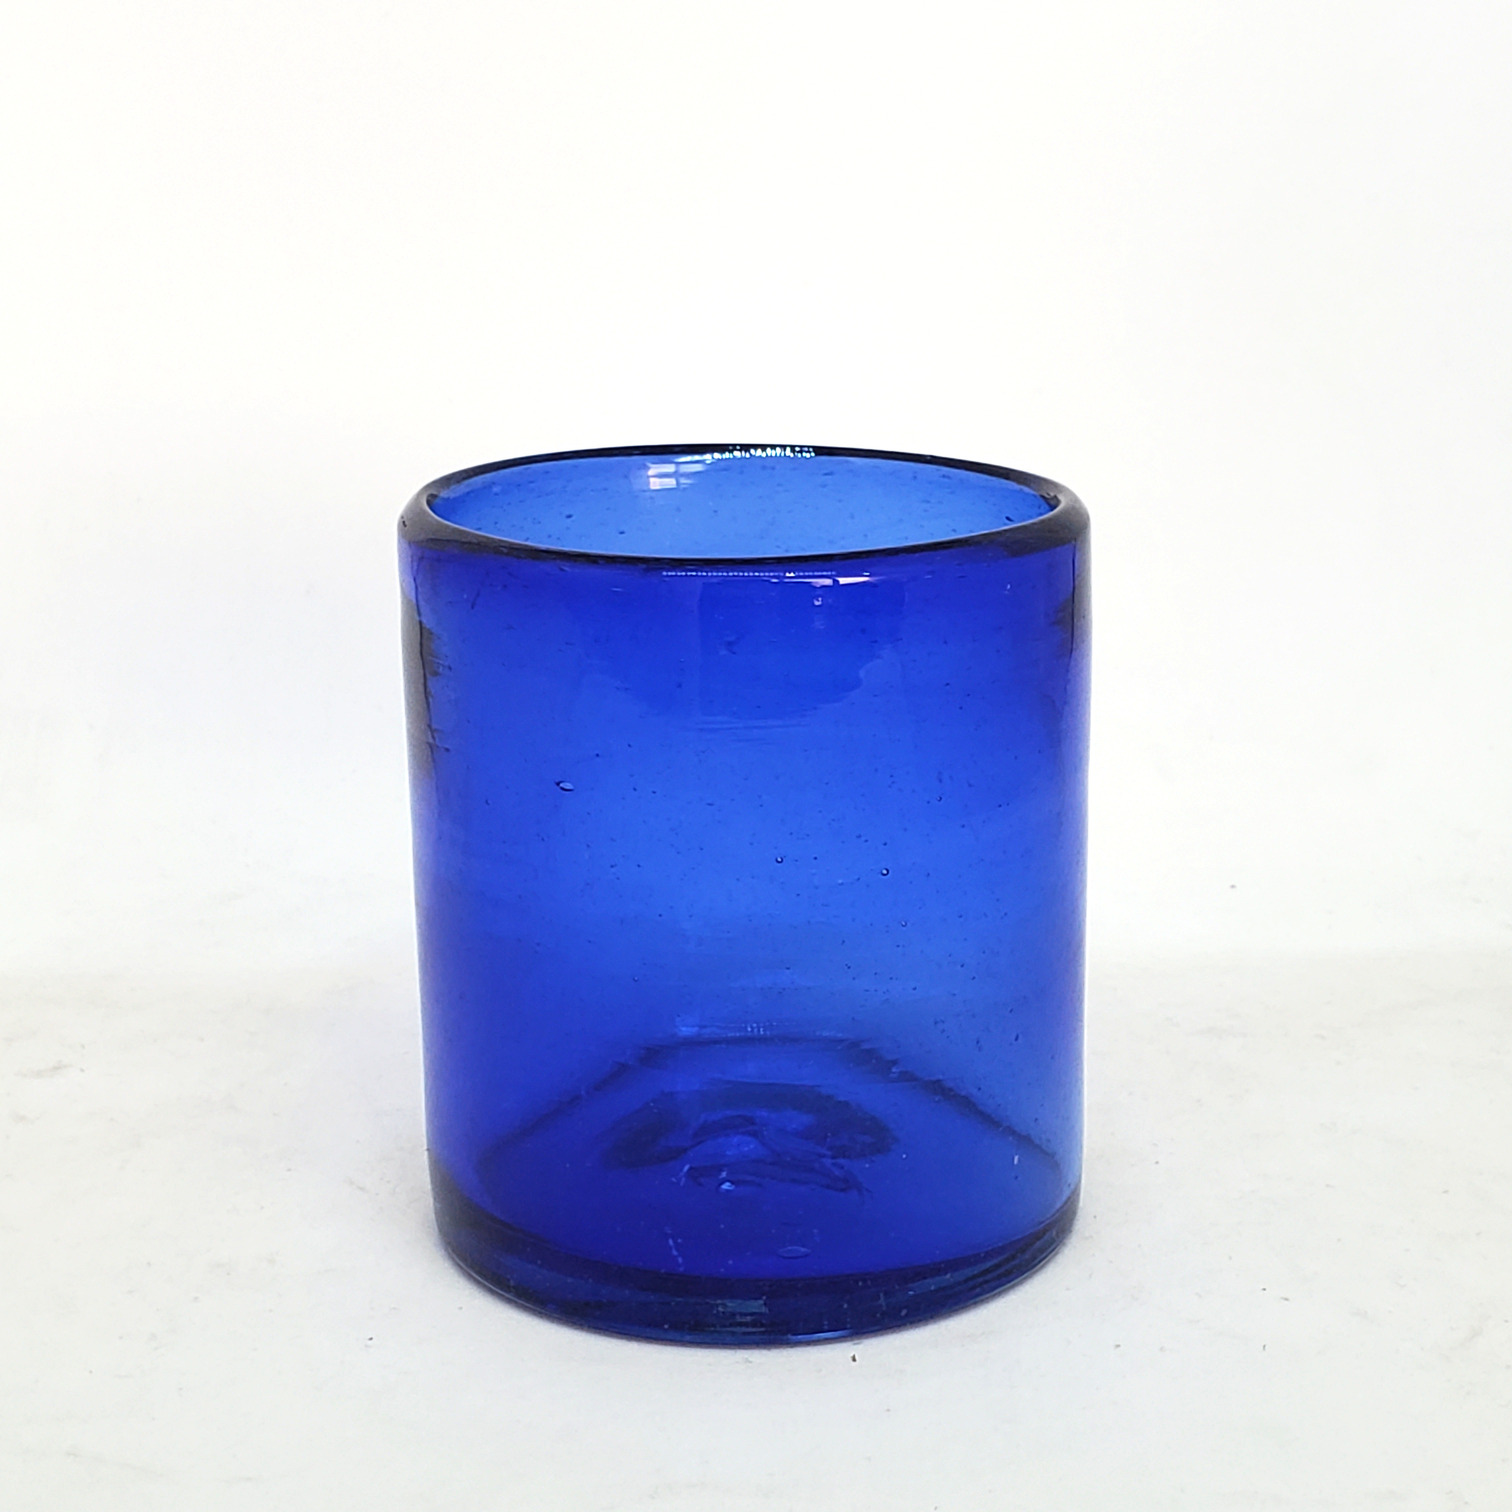 Novedades / Vasos chicos 9 oz color Azul Cobalto S�lido (set de 6) / �stos artesanales vasos le dar�n un toque colorido a su bebida favorita.